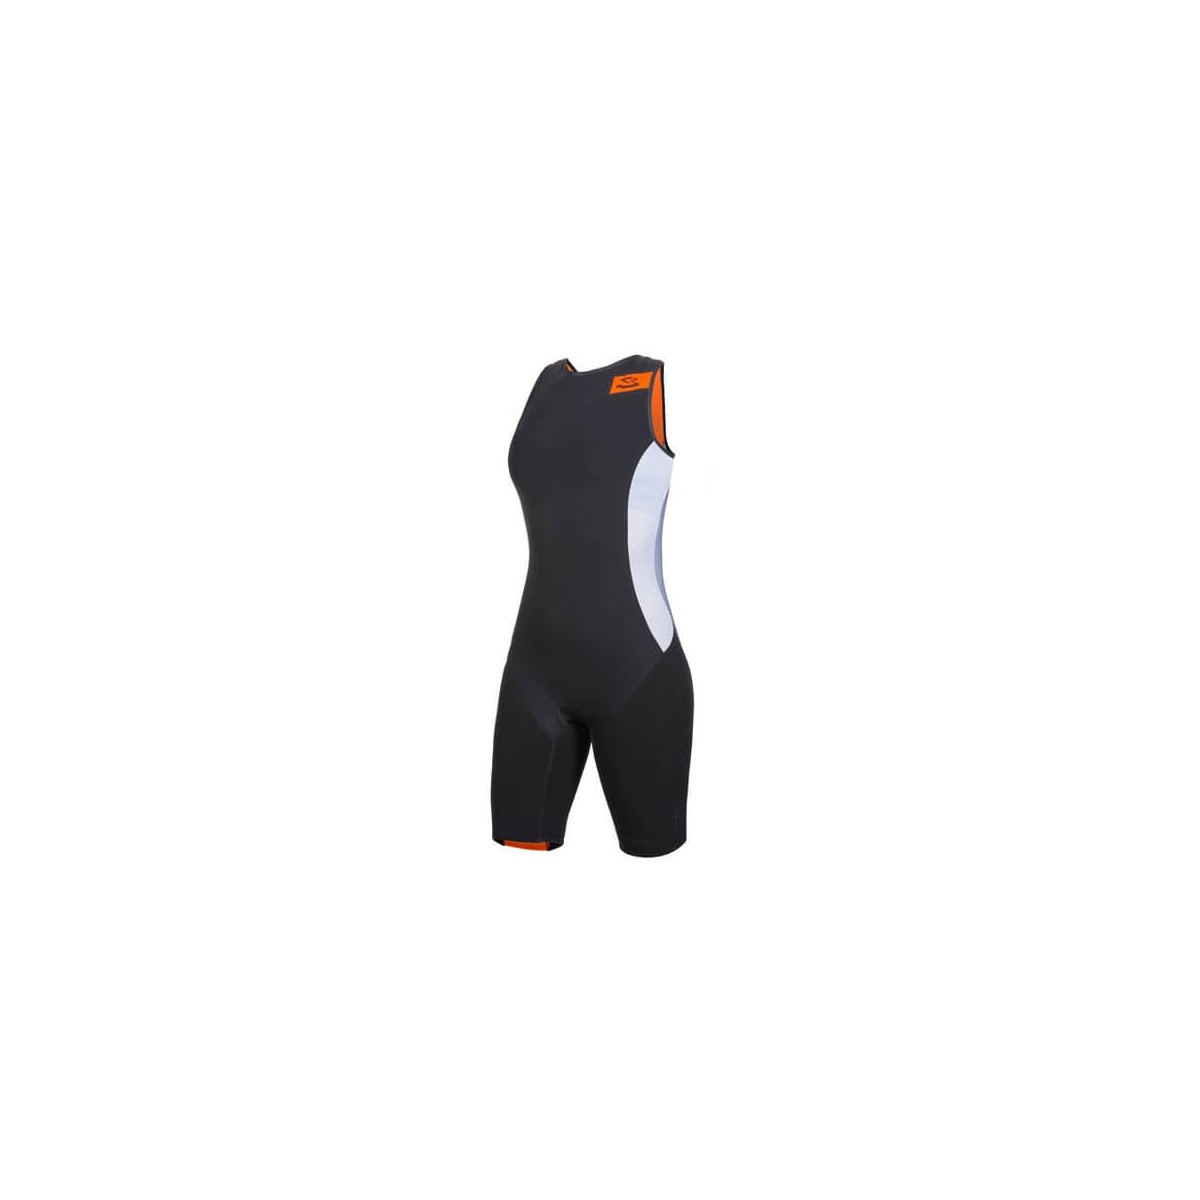 Spiuk Sprint Damen Tri Suit schwarz / weiß / orange, Größe M